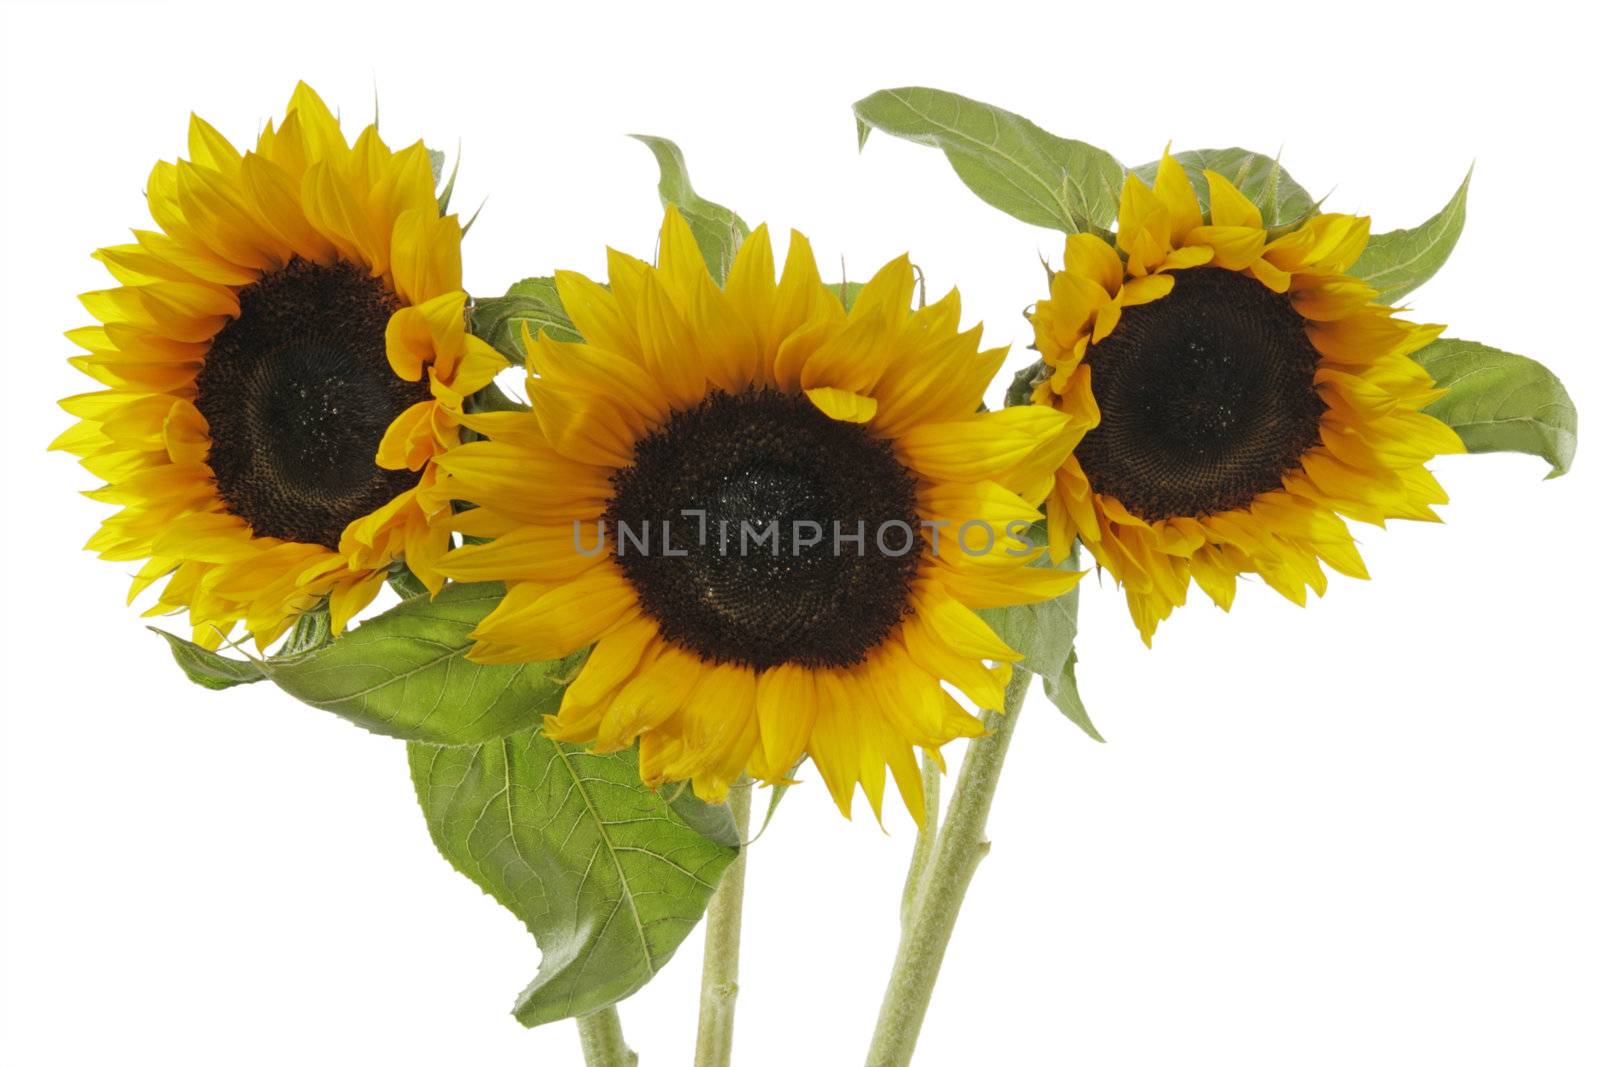 Sunflowers by Teamarbeit